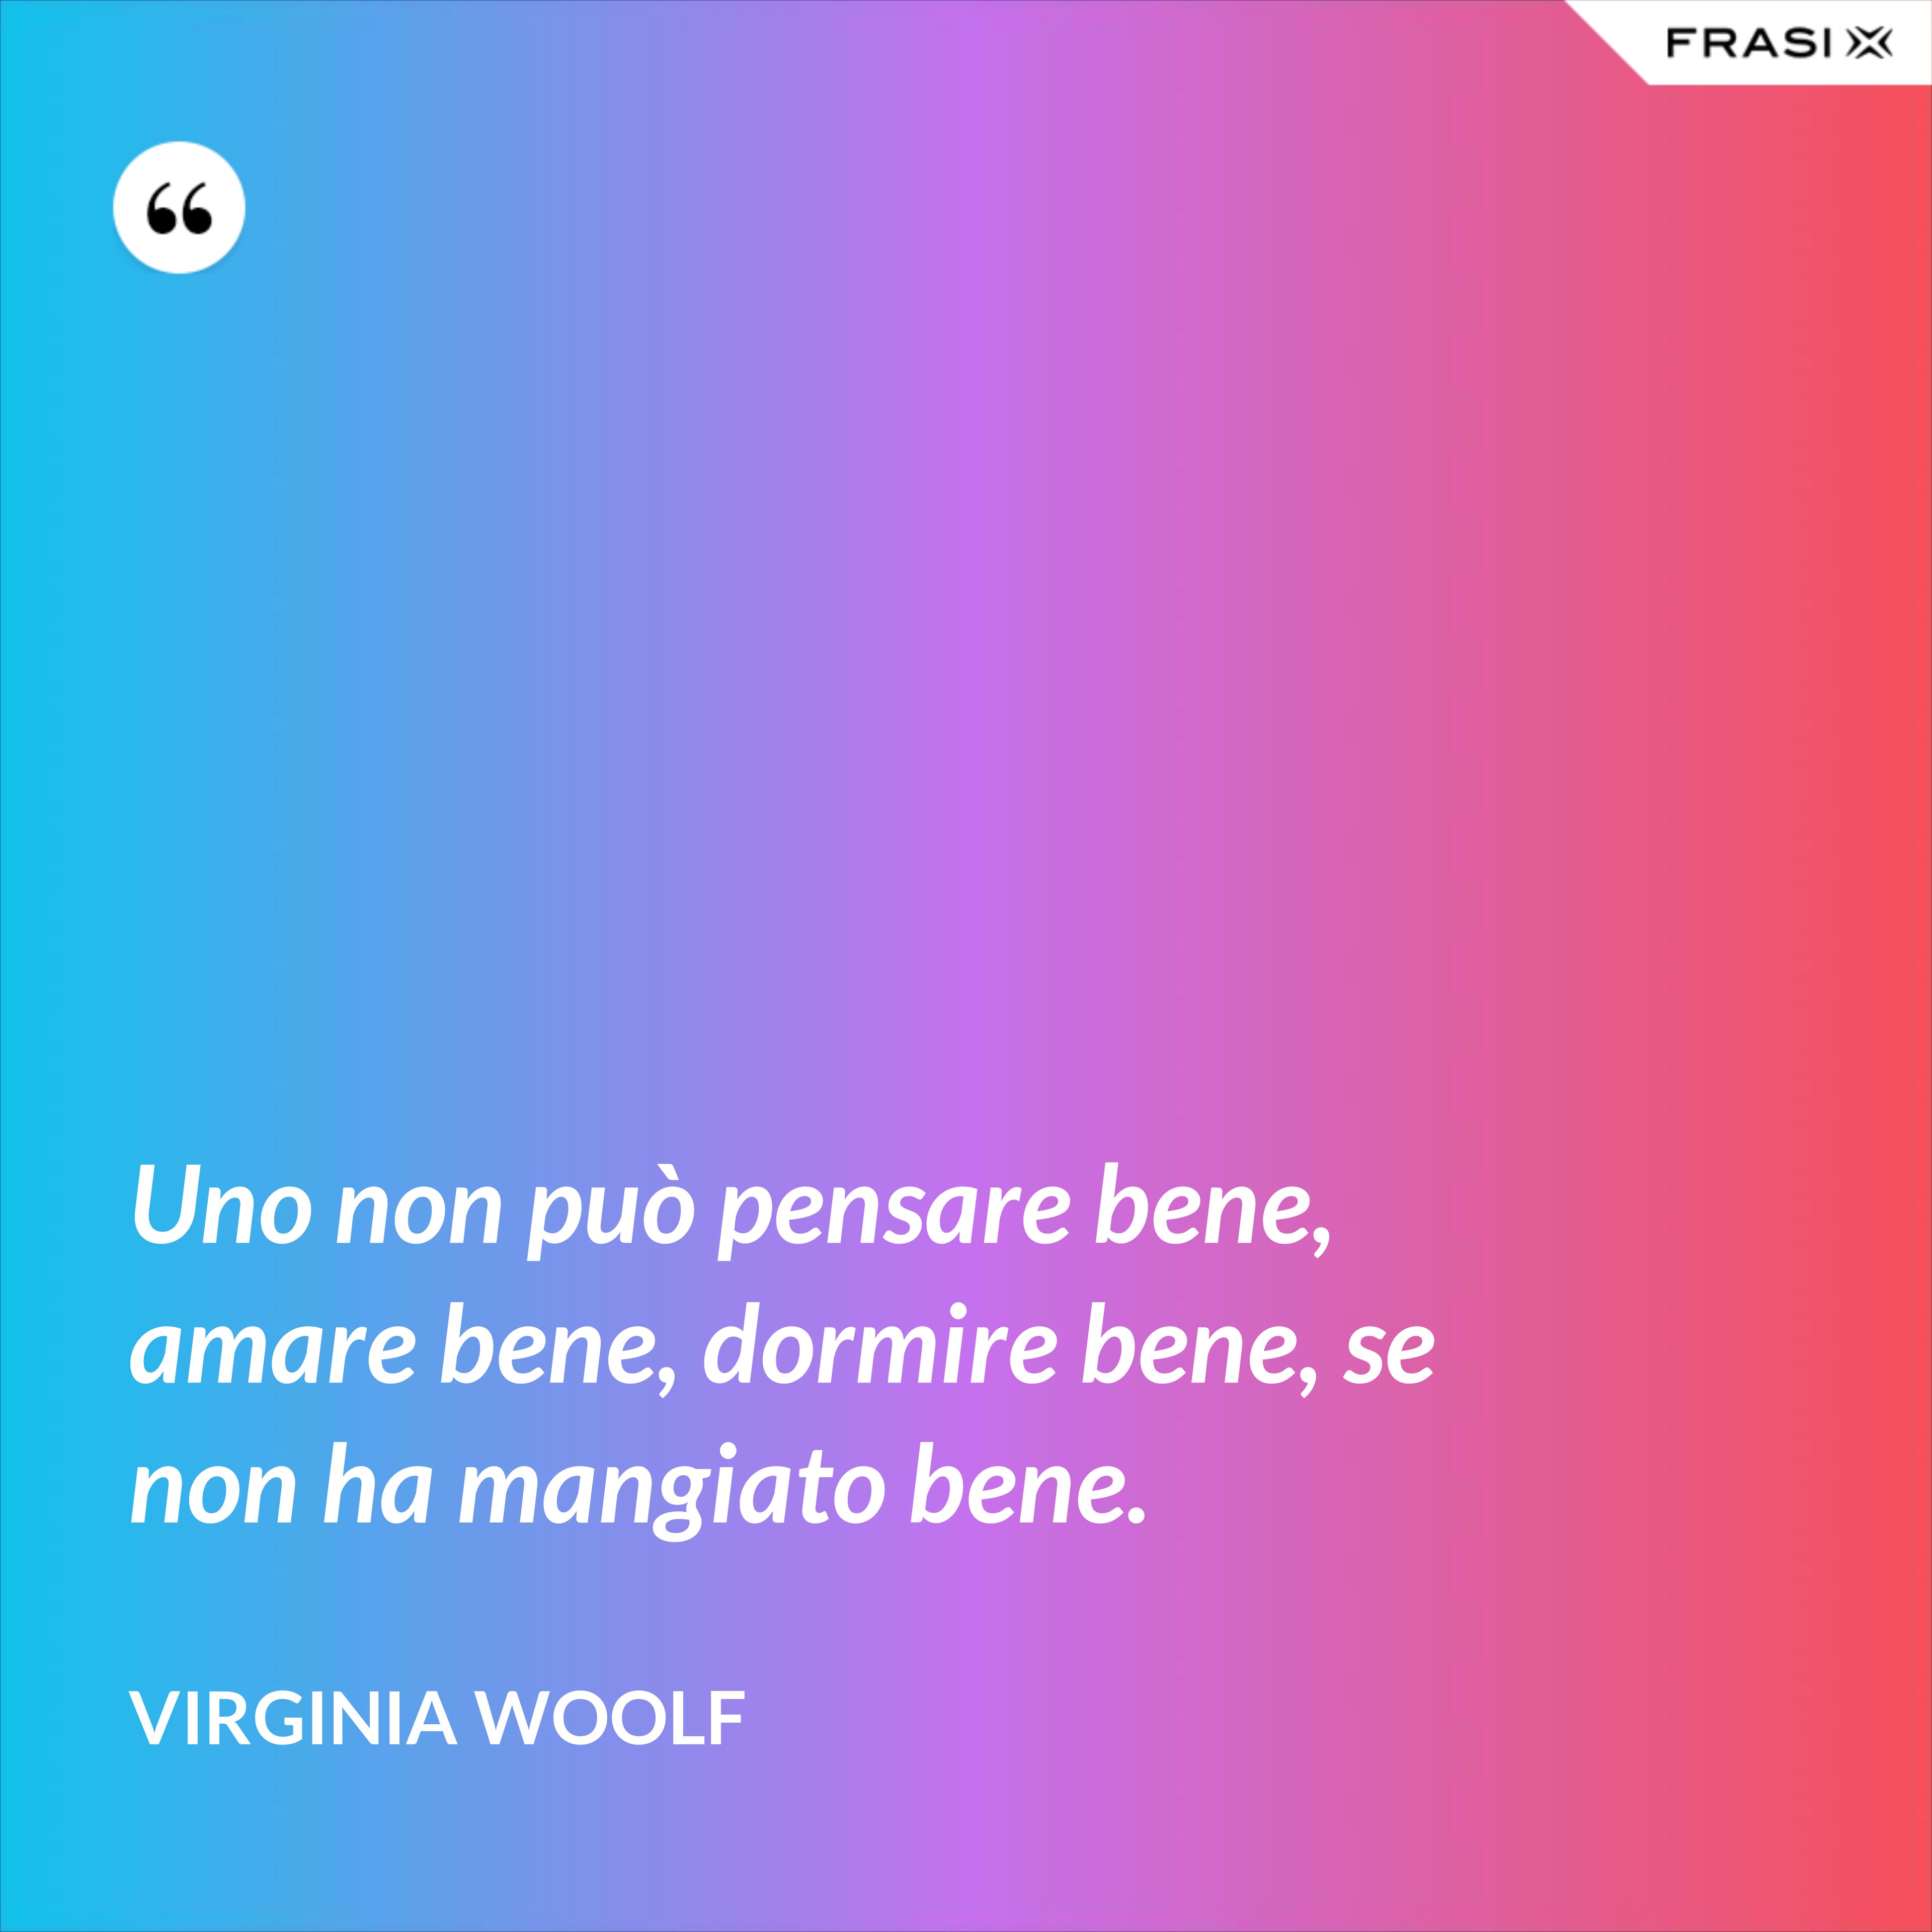 Uno non può pensare bene, amare bene, dormire bene, se non ha mangiato bene. - Virginia Woolf